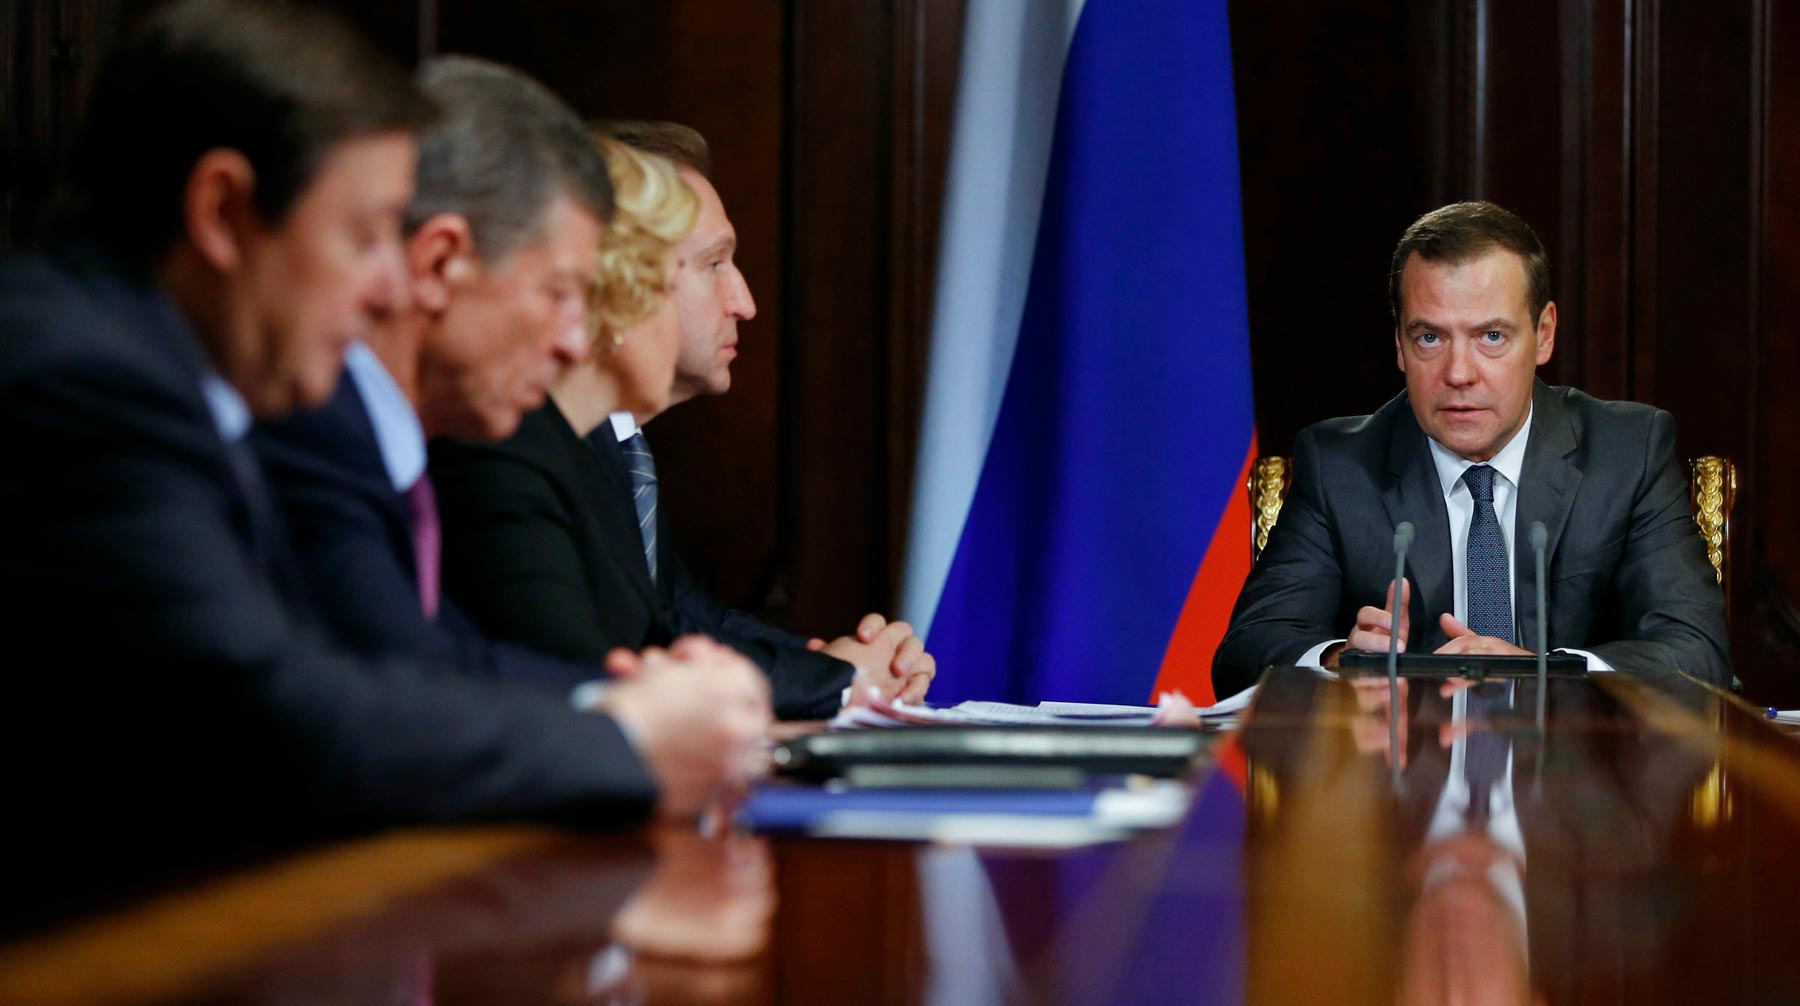 Граждане России также высказали свое отношение к новому составу кабинета министров страны Фото: © Global Look Press / vk.com/ dm